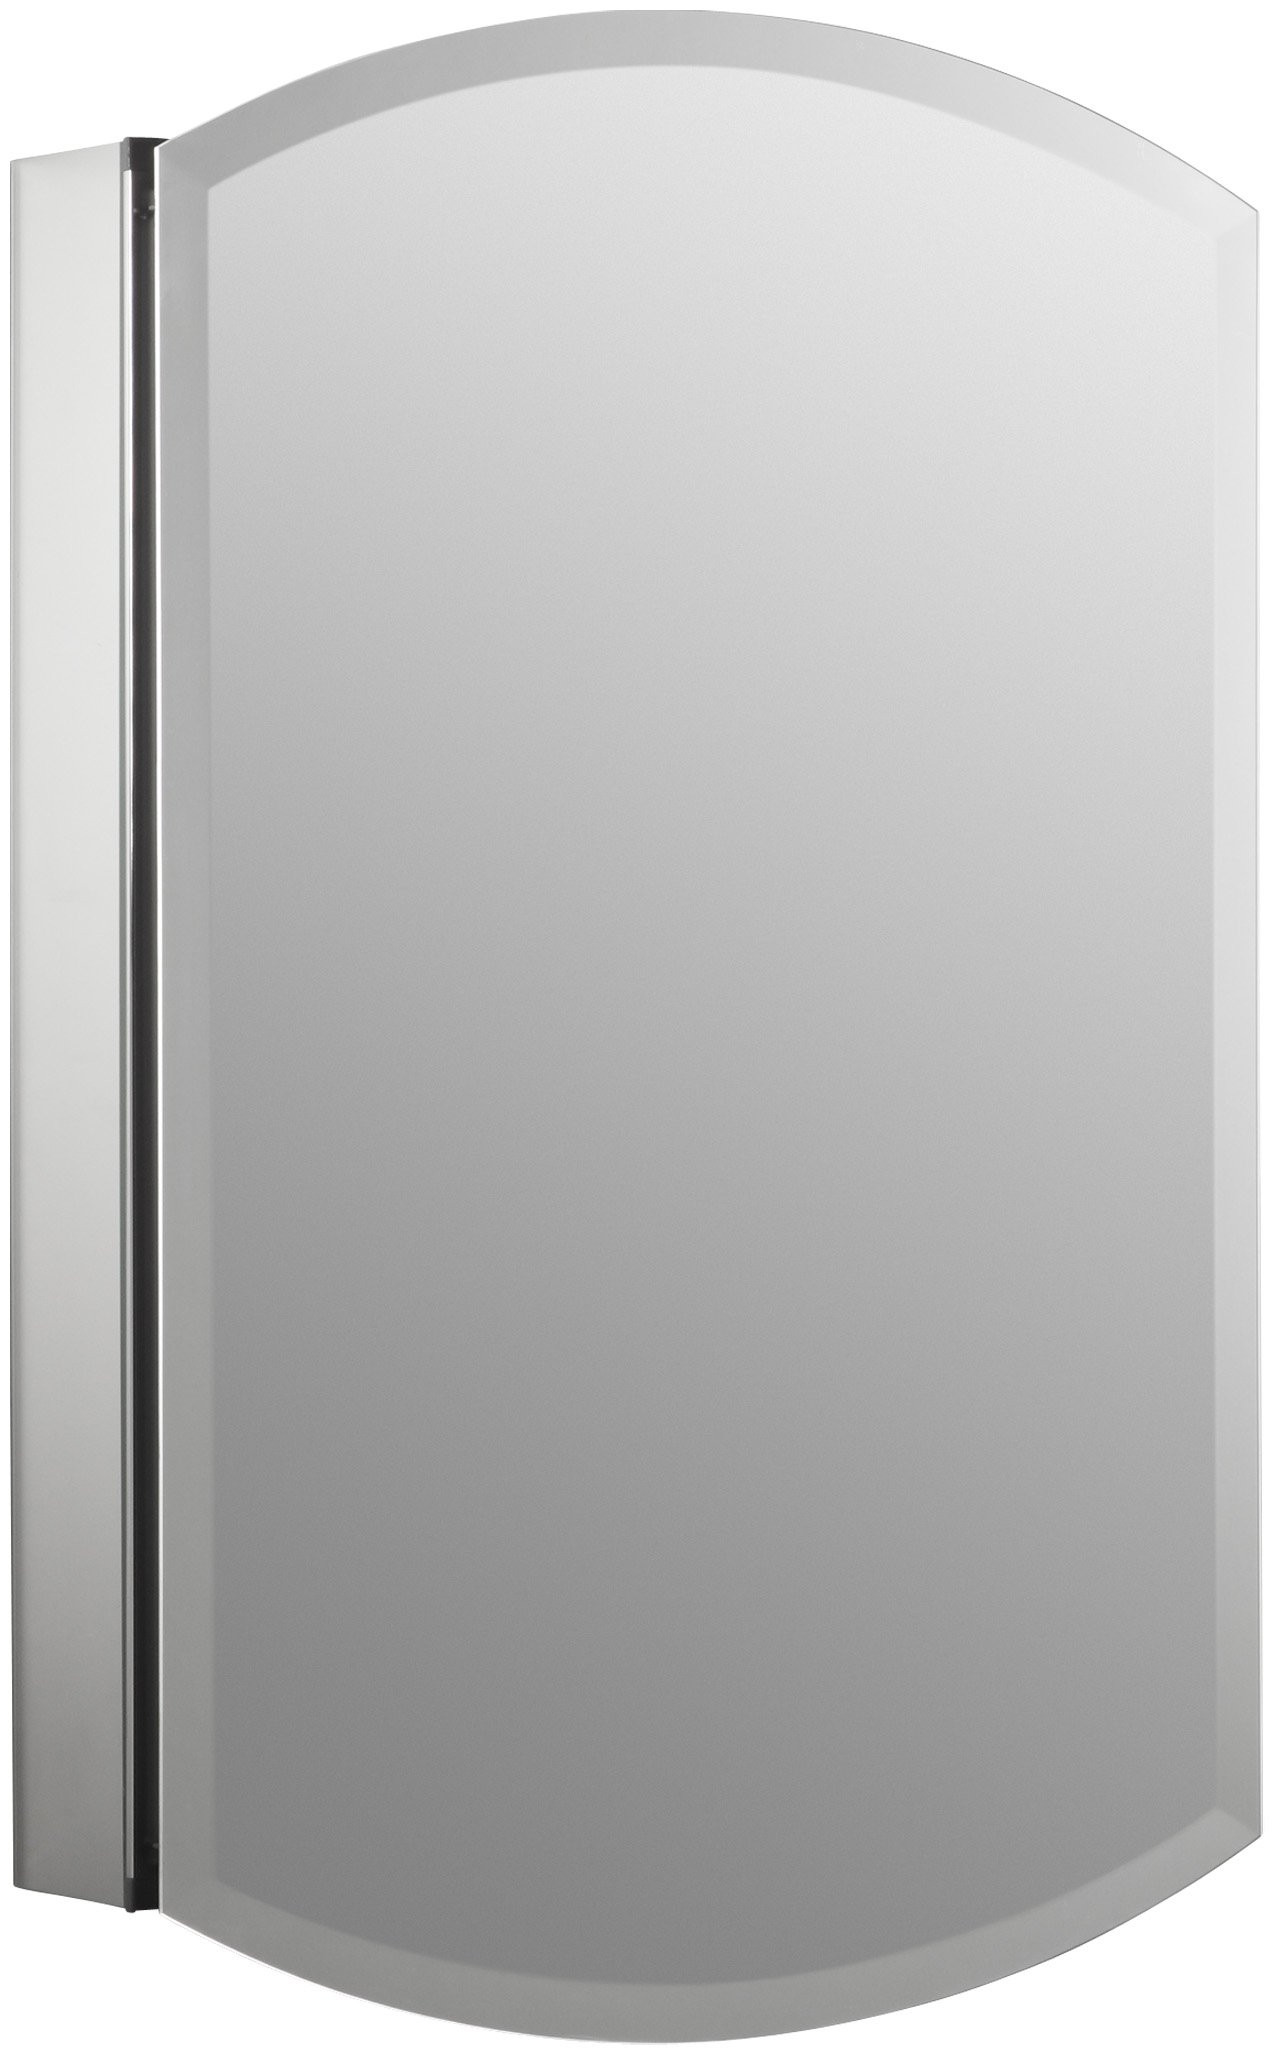 Kohler Bathroom Mirror Cabinet
 KOHLER Archer Frameless 20 inch x 31 inch Aluminum